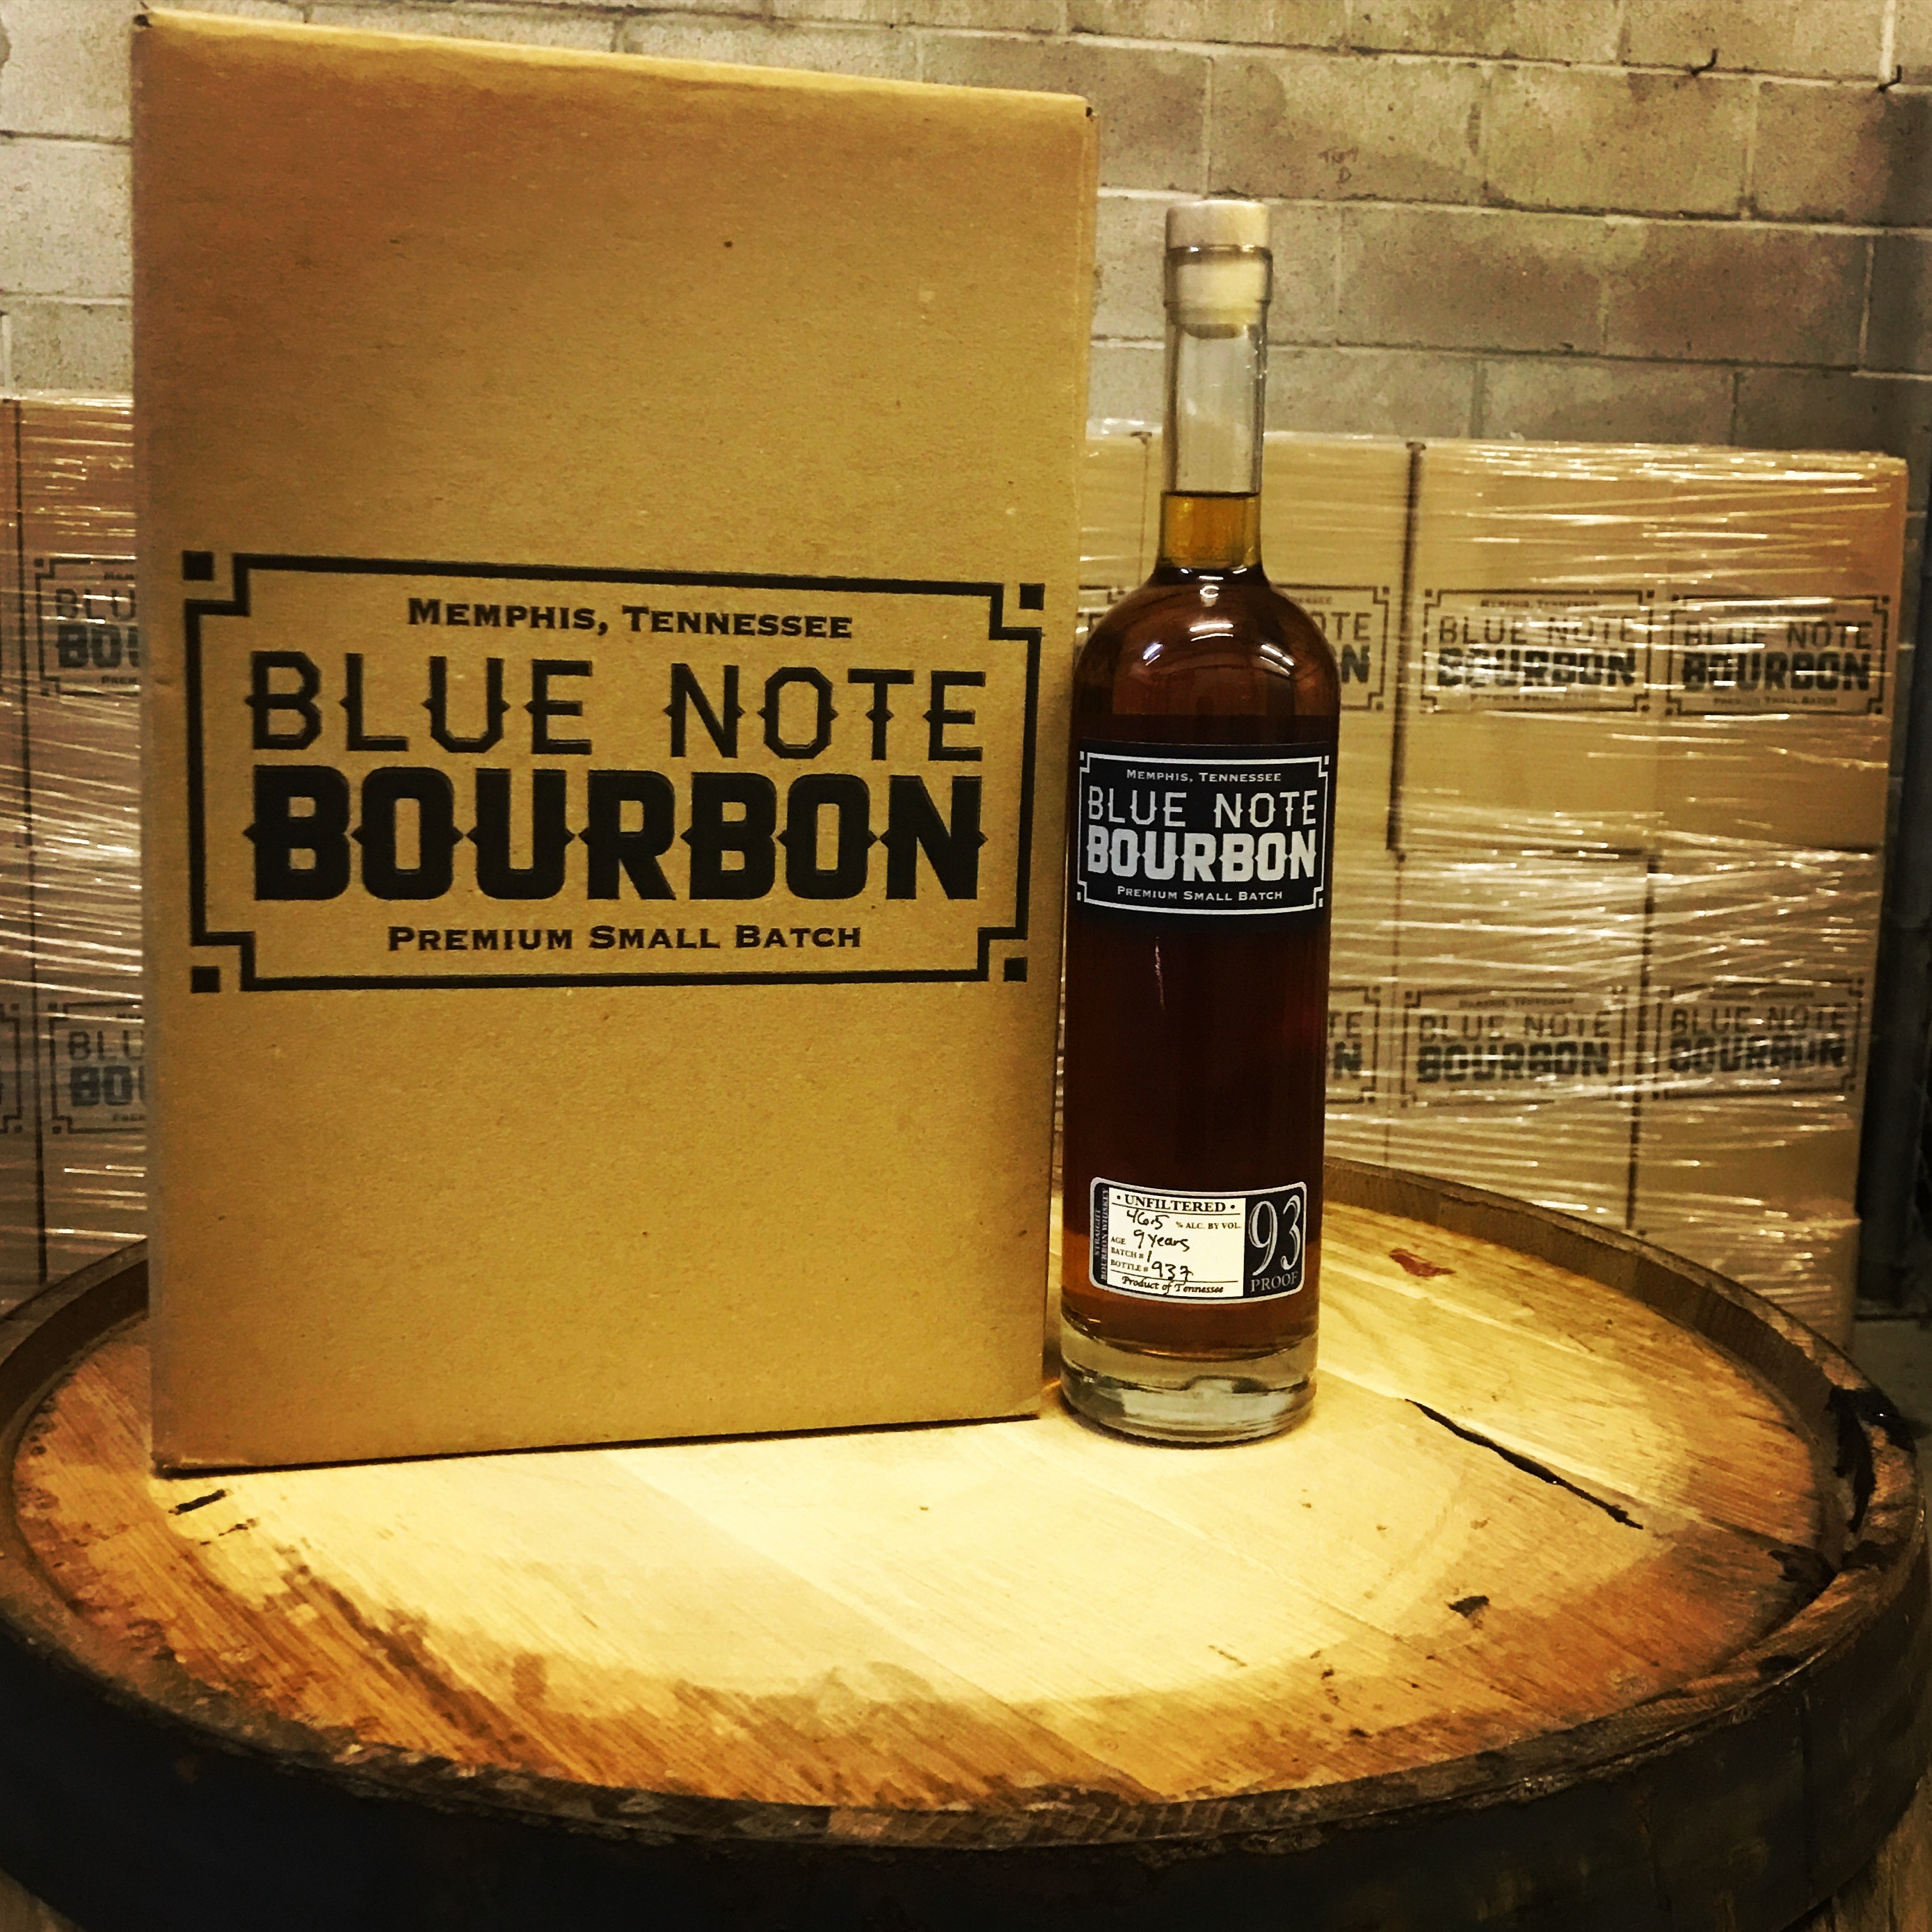 Memphis Flyer Blue Note Bourbon To Debut